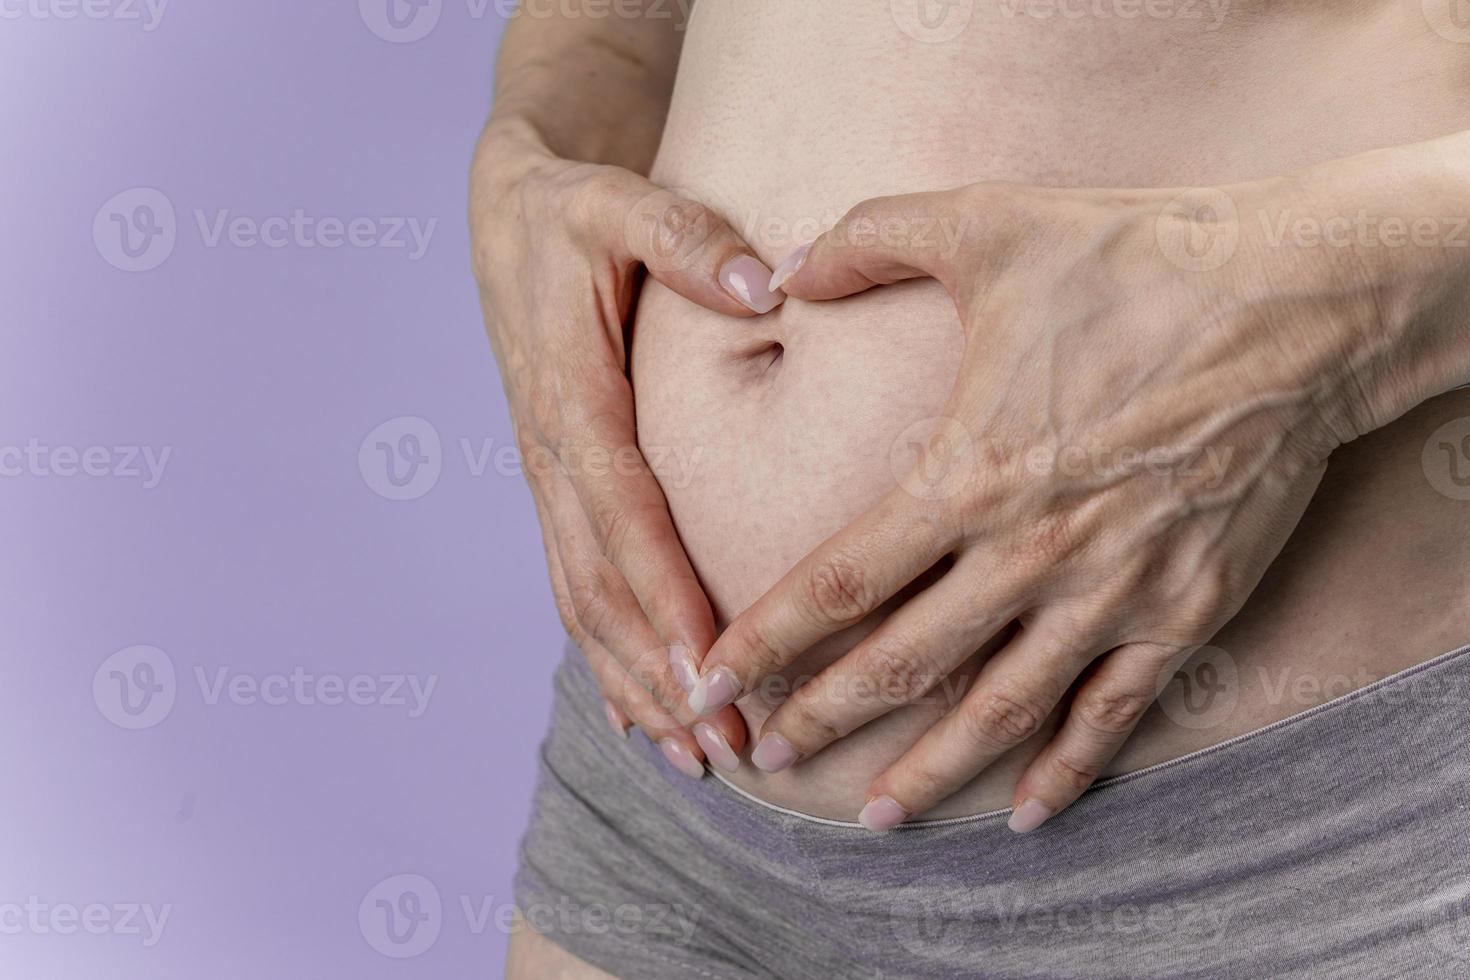 mulher grávida mantém as mãos na barriga em um fundo azul. conceito de gravidez, maternidade, preparação e expectativa. close-up, dentro de casa. linda foto de humor terno da gravidez.